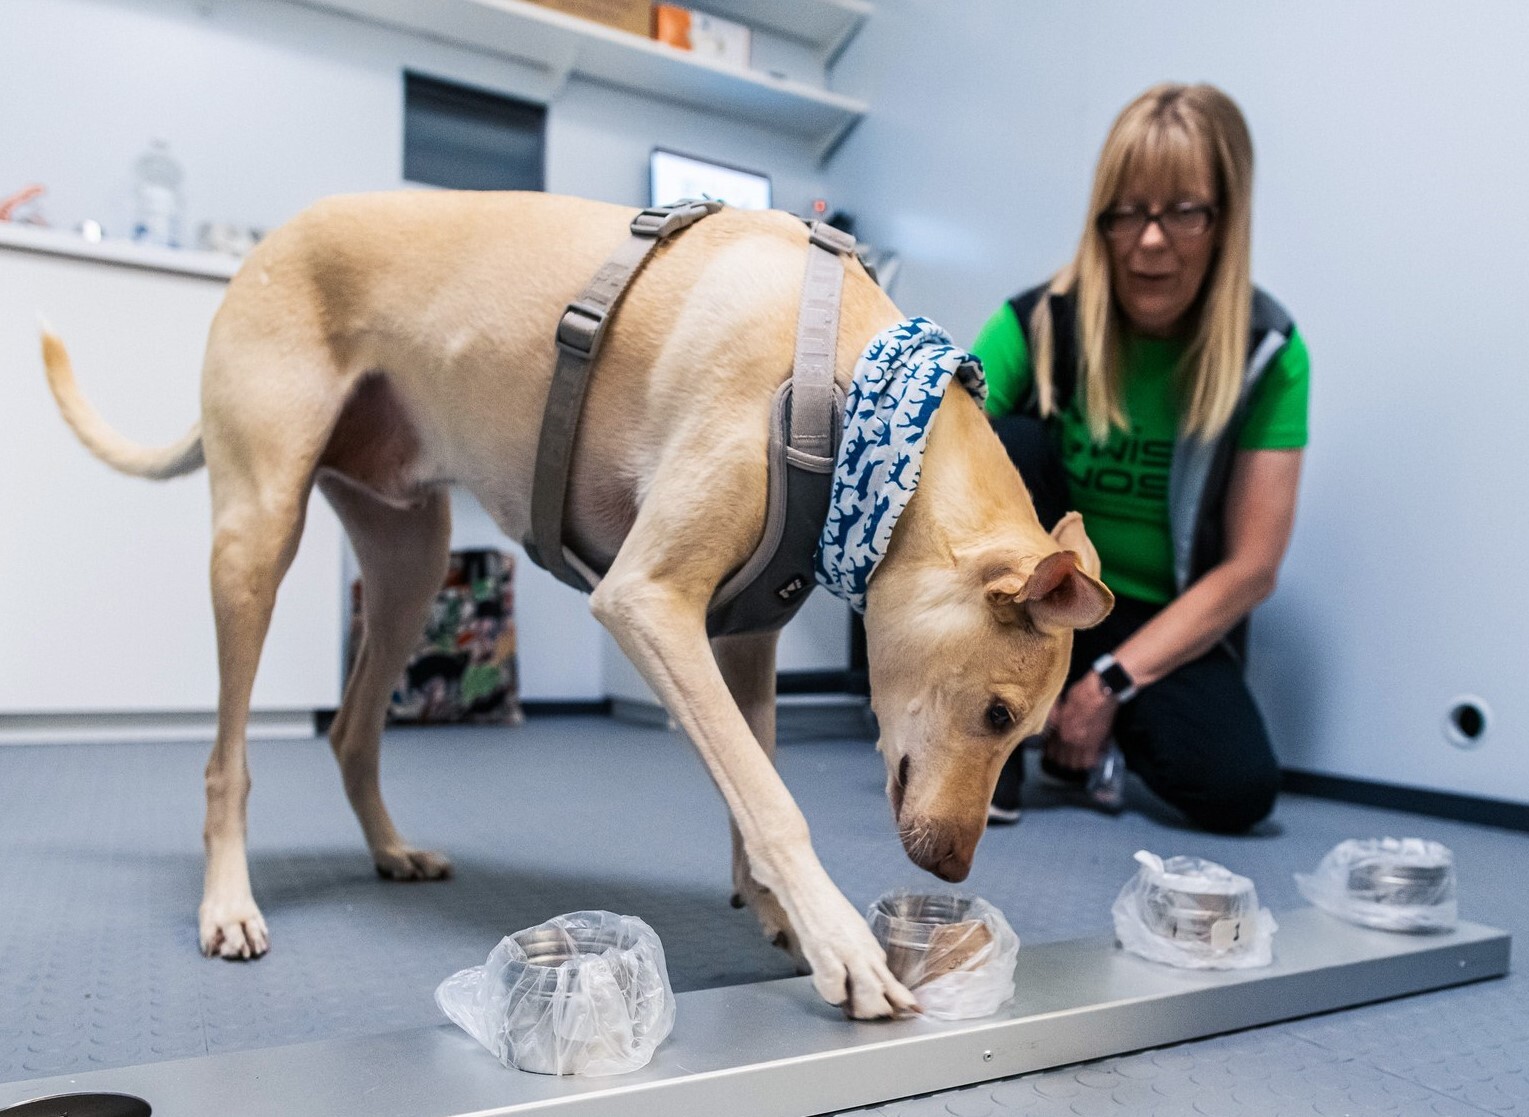 DNEVNA: V Sloveniji bodo izurili prvo pasjo enoto za odkrivanje covida